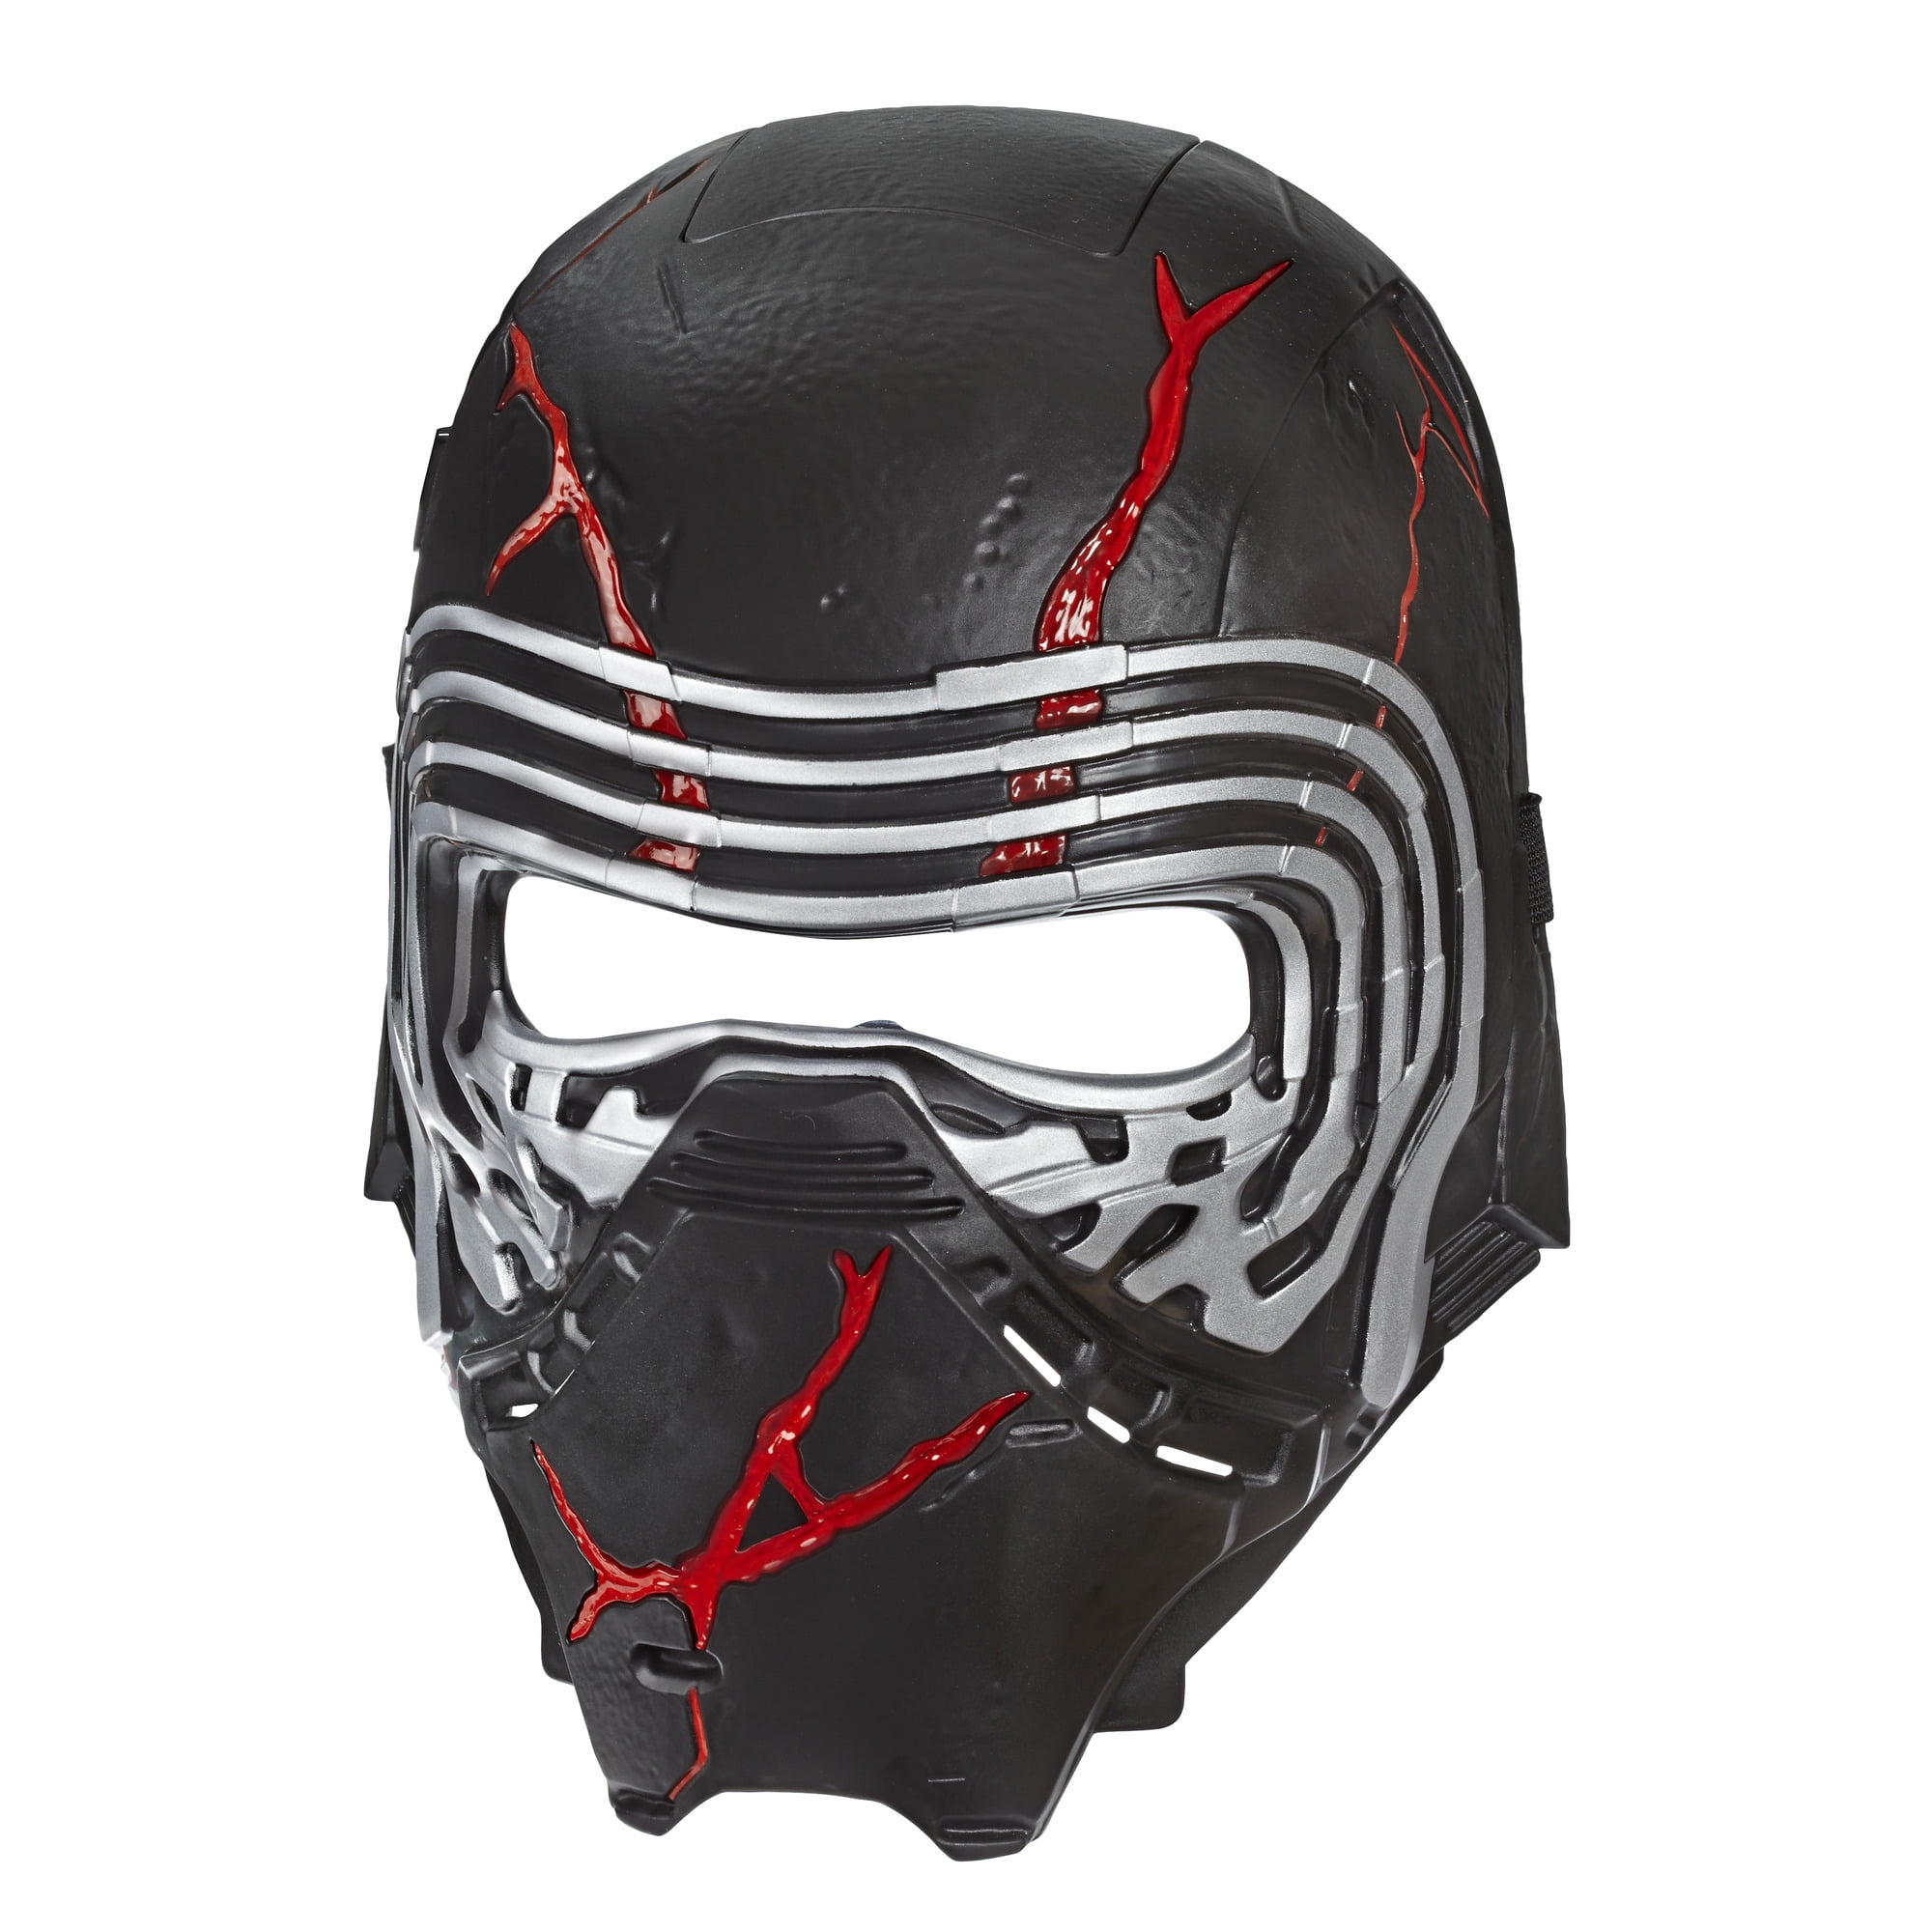 fingeraftryk Atlantic Repræsentere Star Wars: the RIse of Skywalker Supreme Leader Kylo Ren force Rage Mask -  Walmart.com